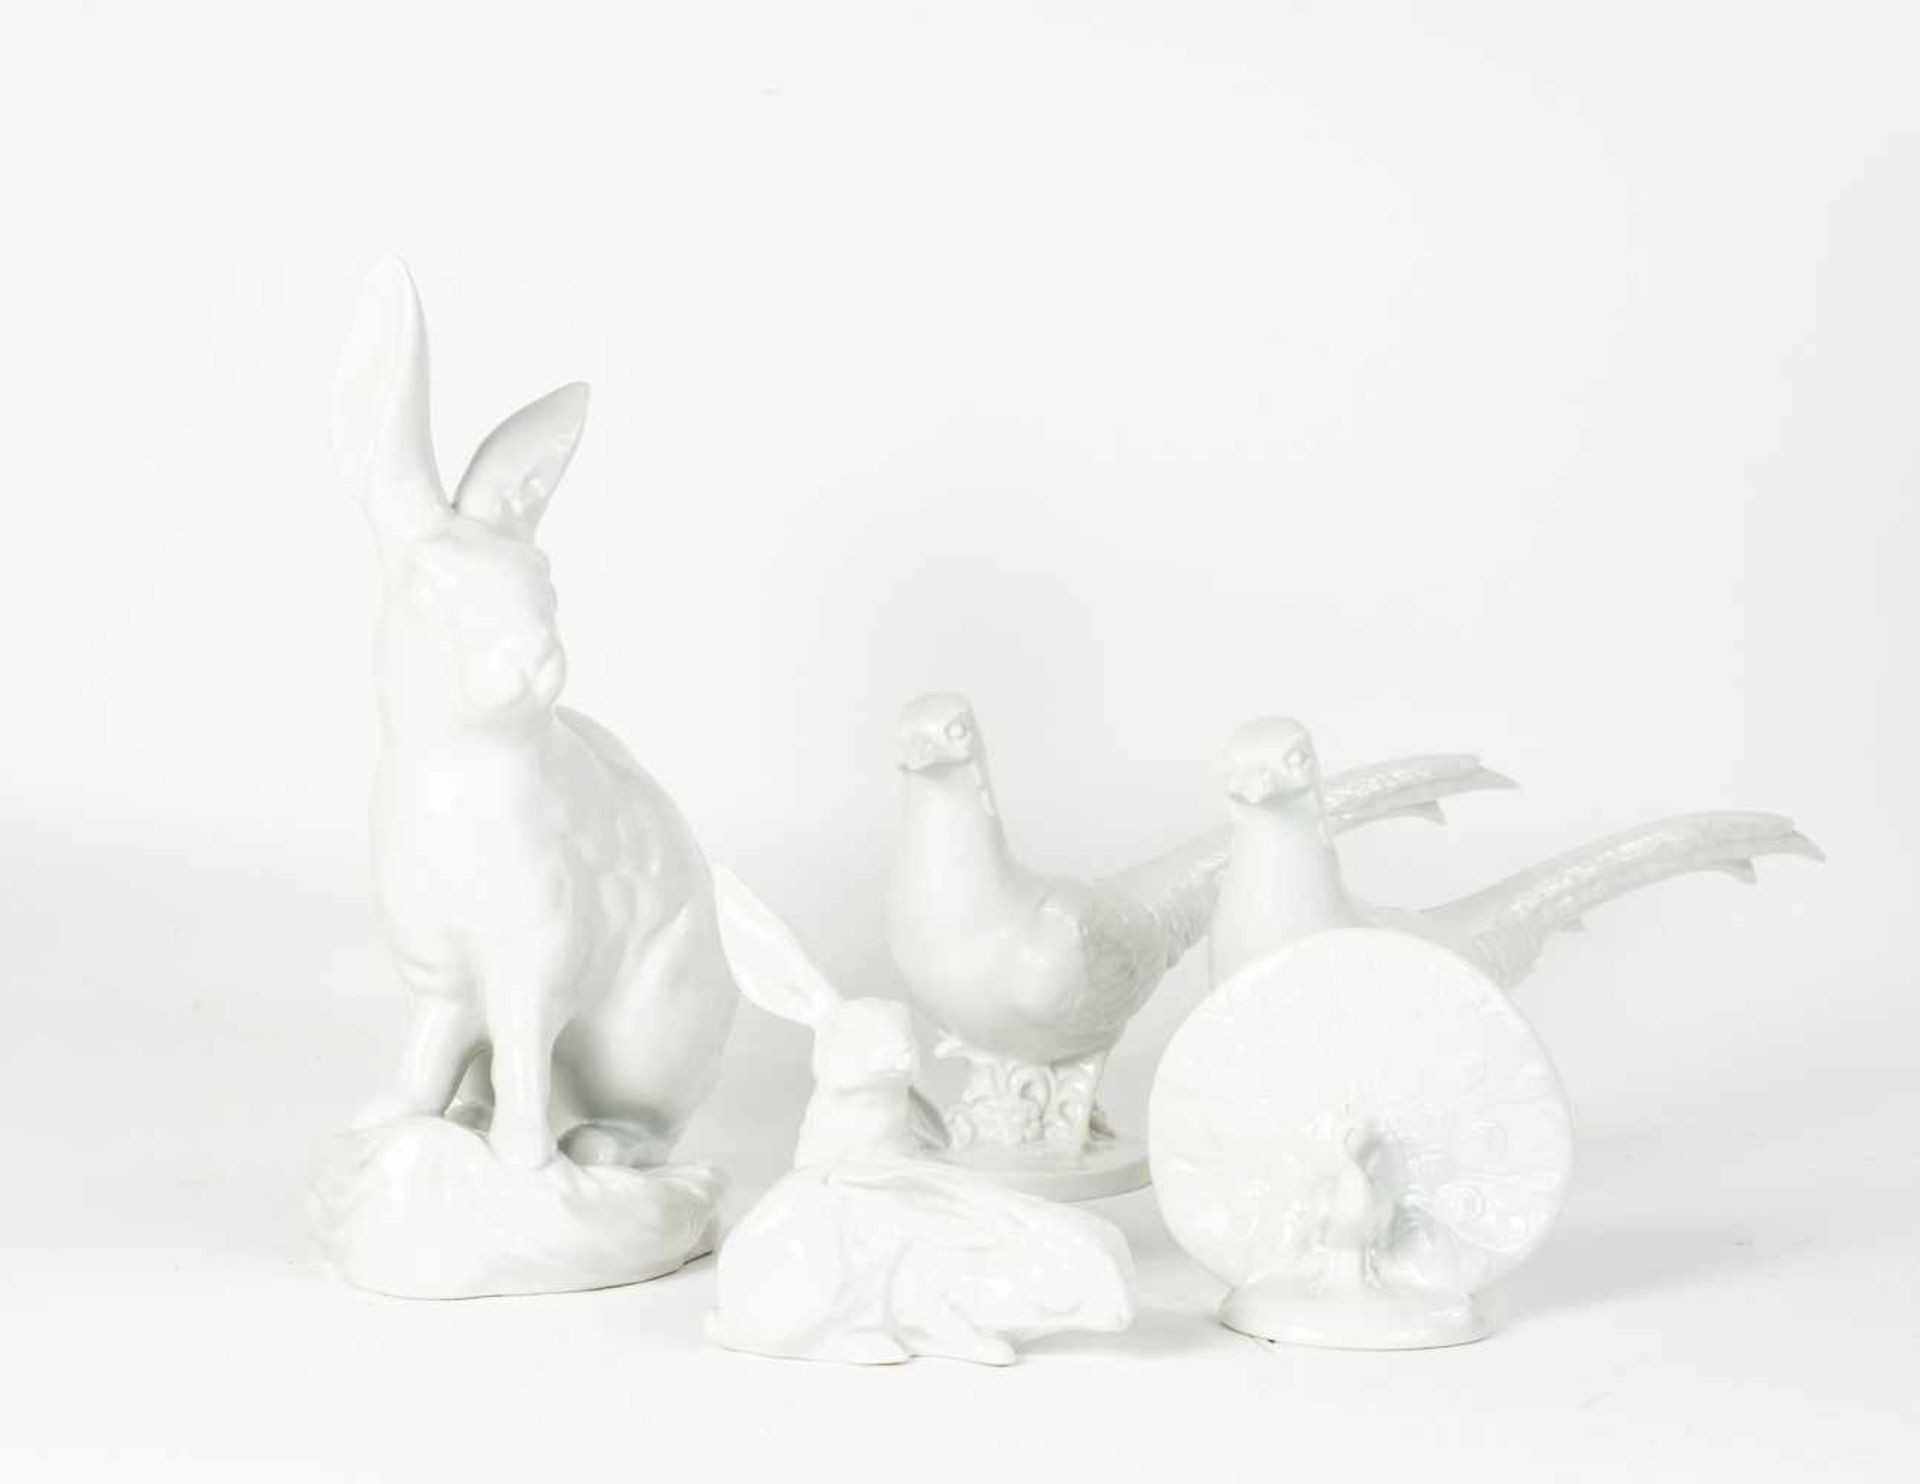 Konvolut Tierfiguren 5-tlg., Herend, Porzellan, weiß, glasiert, großer Hase, Höhe 30 cm, 2 Fasane,